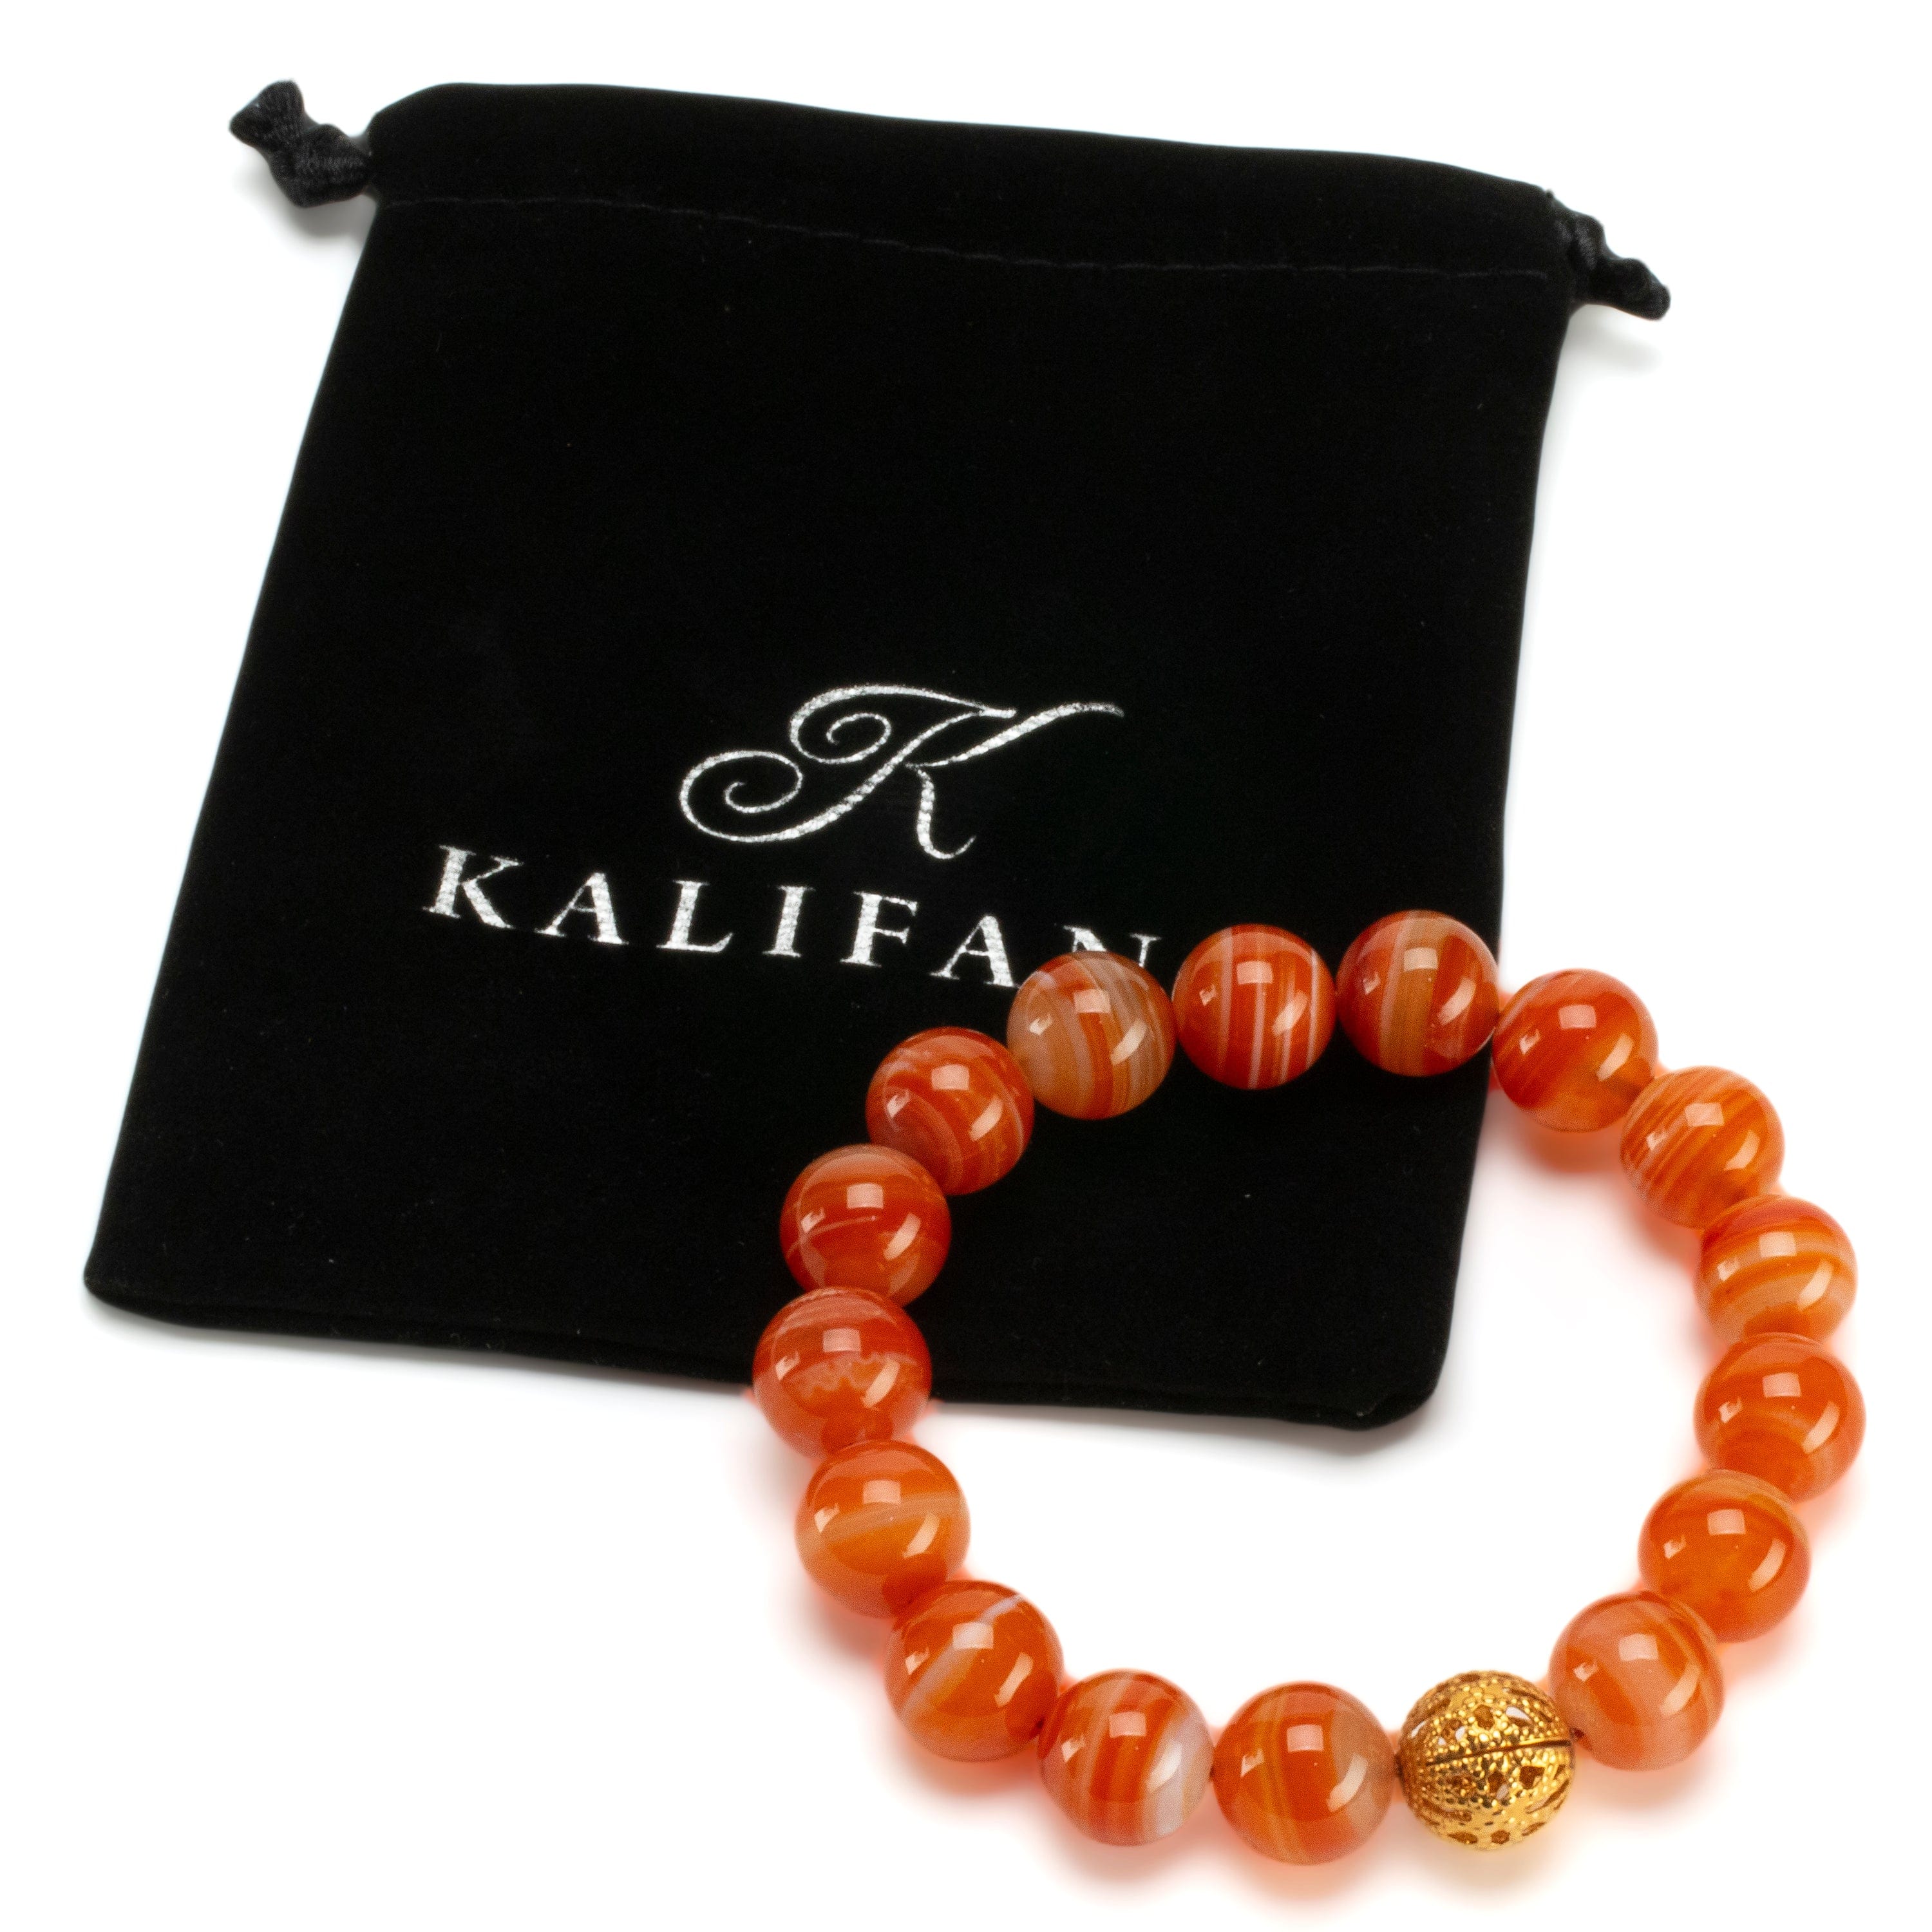 Kalifano Gemstone Bracelets Polished Banded Carnelian 12mm Gemstone Bead Elastic Bracelet with Gold Accent Bead GOLD-BGP-071